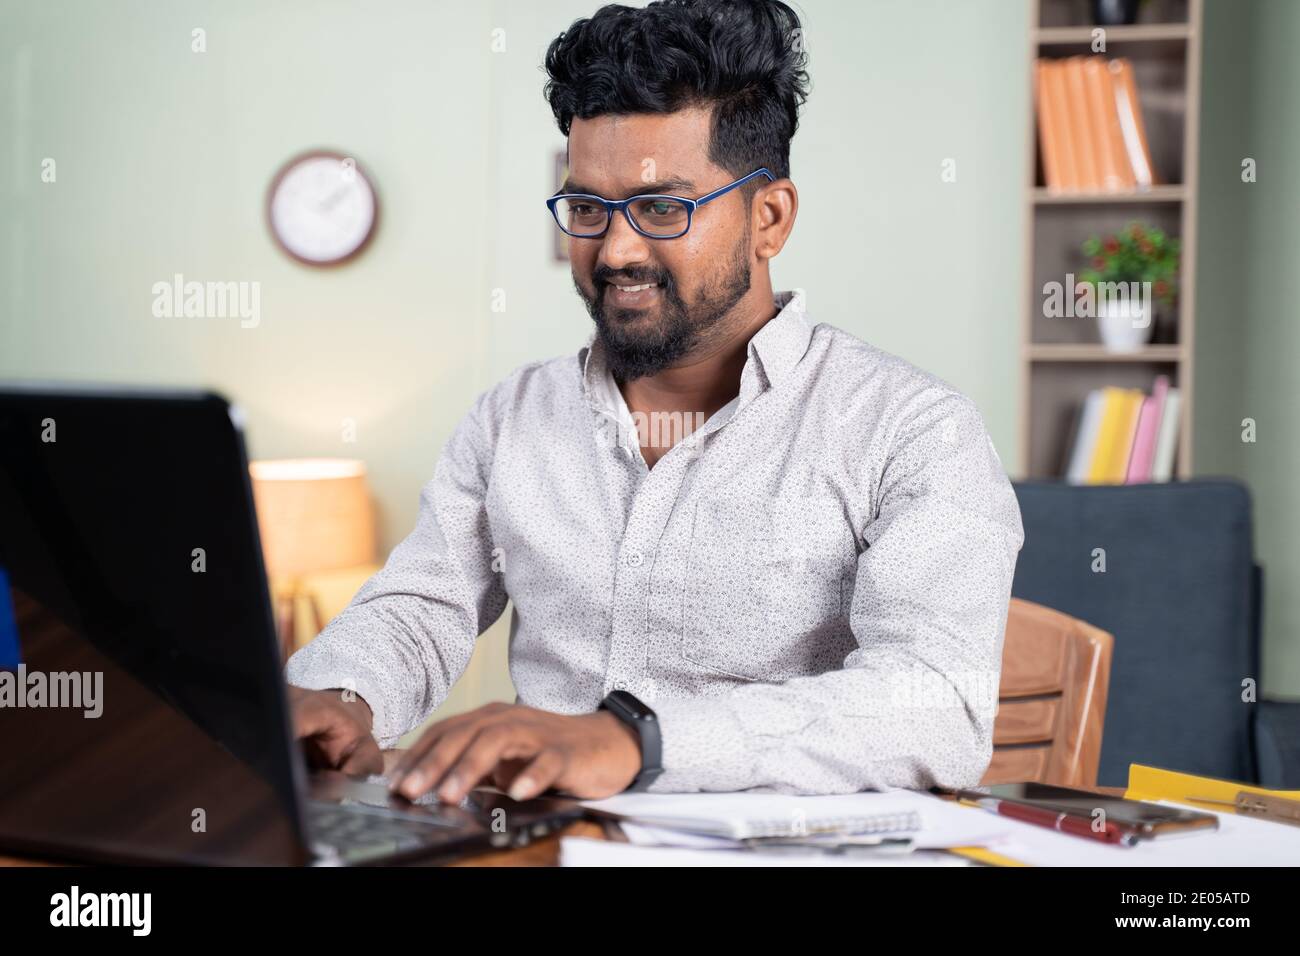 Un jeune homme heureux qui travaille sur un ordinateur portable à la maison - concept d'employé informatique professionnel au travail à domicile. Banque D'Images